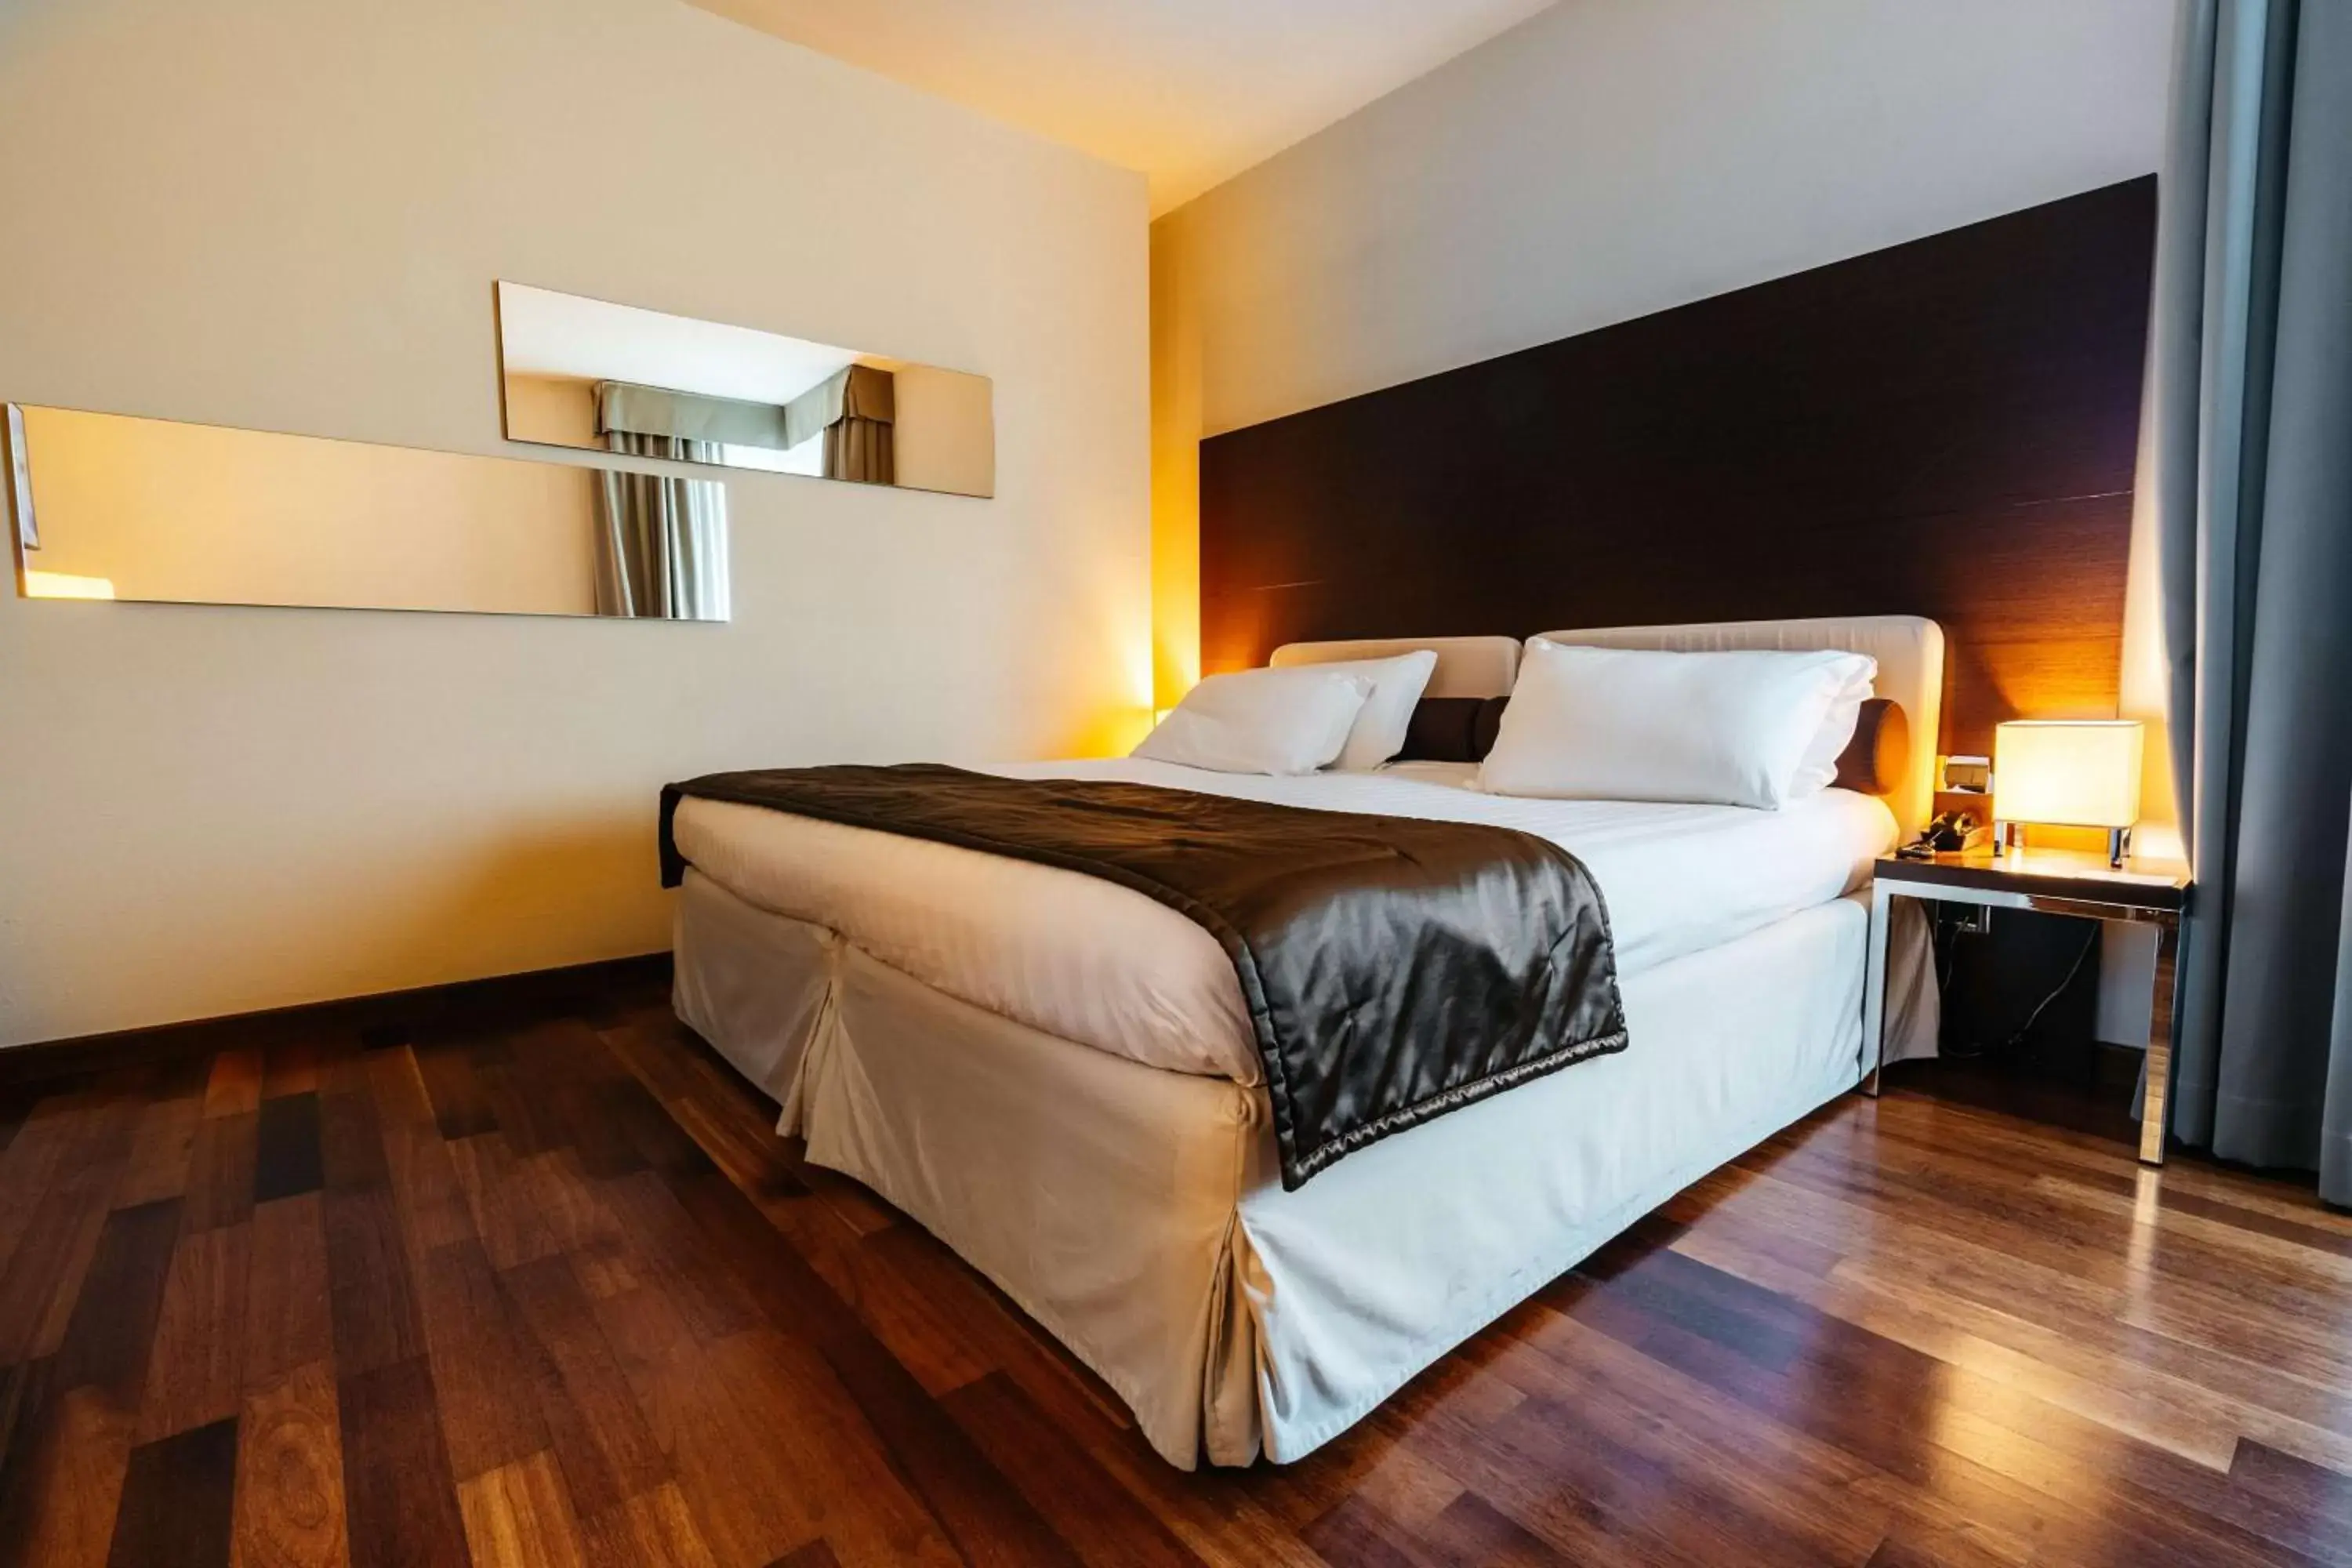 Bedroom, Bed in Best Western Hotel Tre Torri